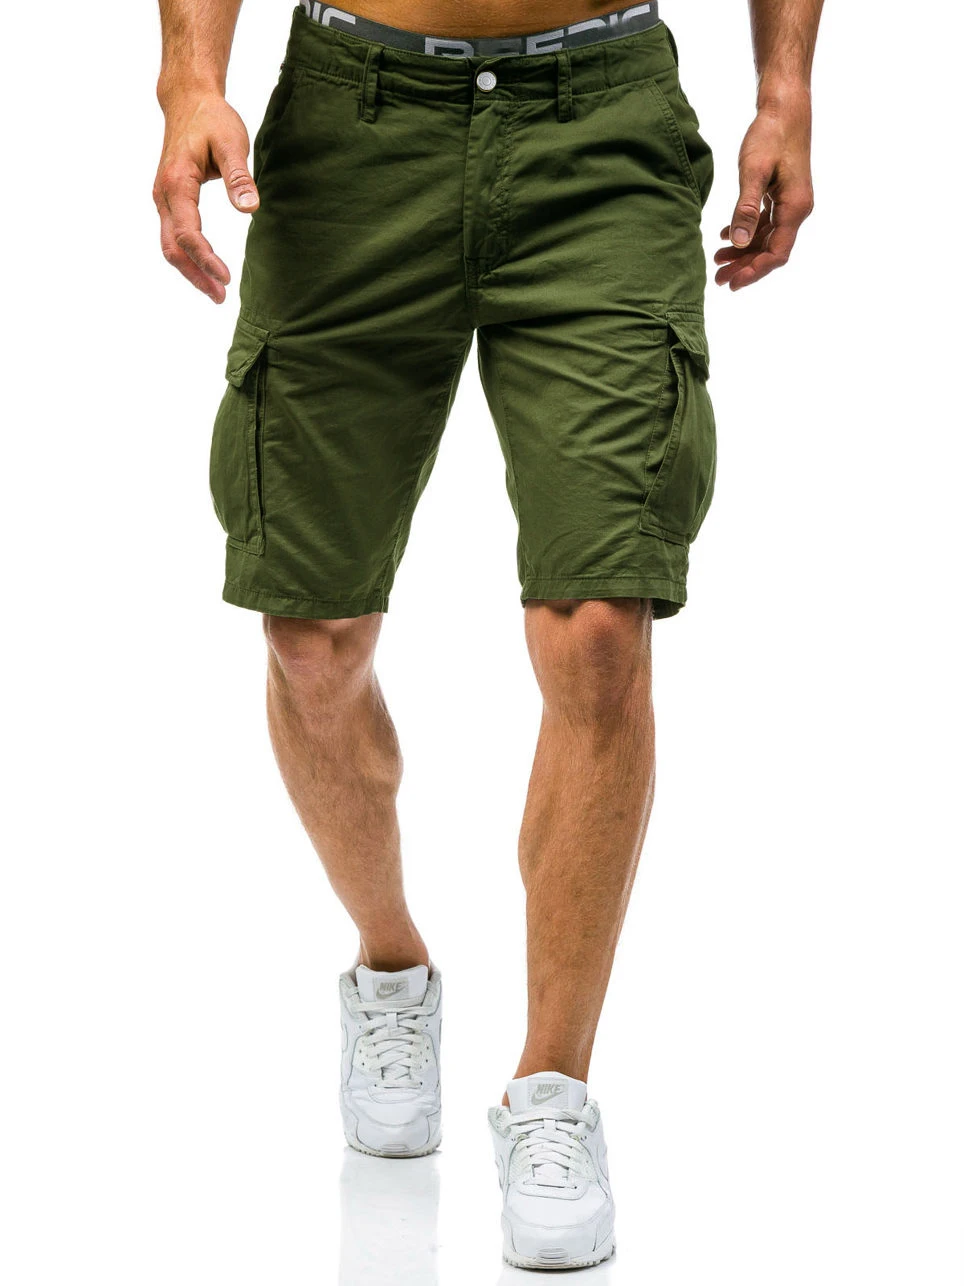 Новый 2018 Для мужчин шорты-карго Повседневное свободные короткие штаны камуфляж Военная Летний стиль по колено 2 цвета шорты Для мужчин